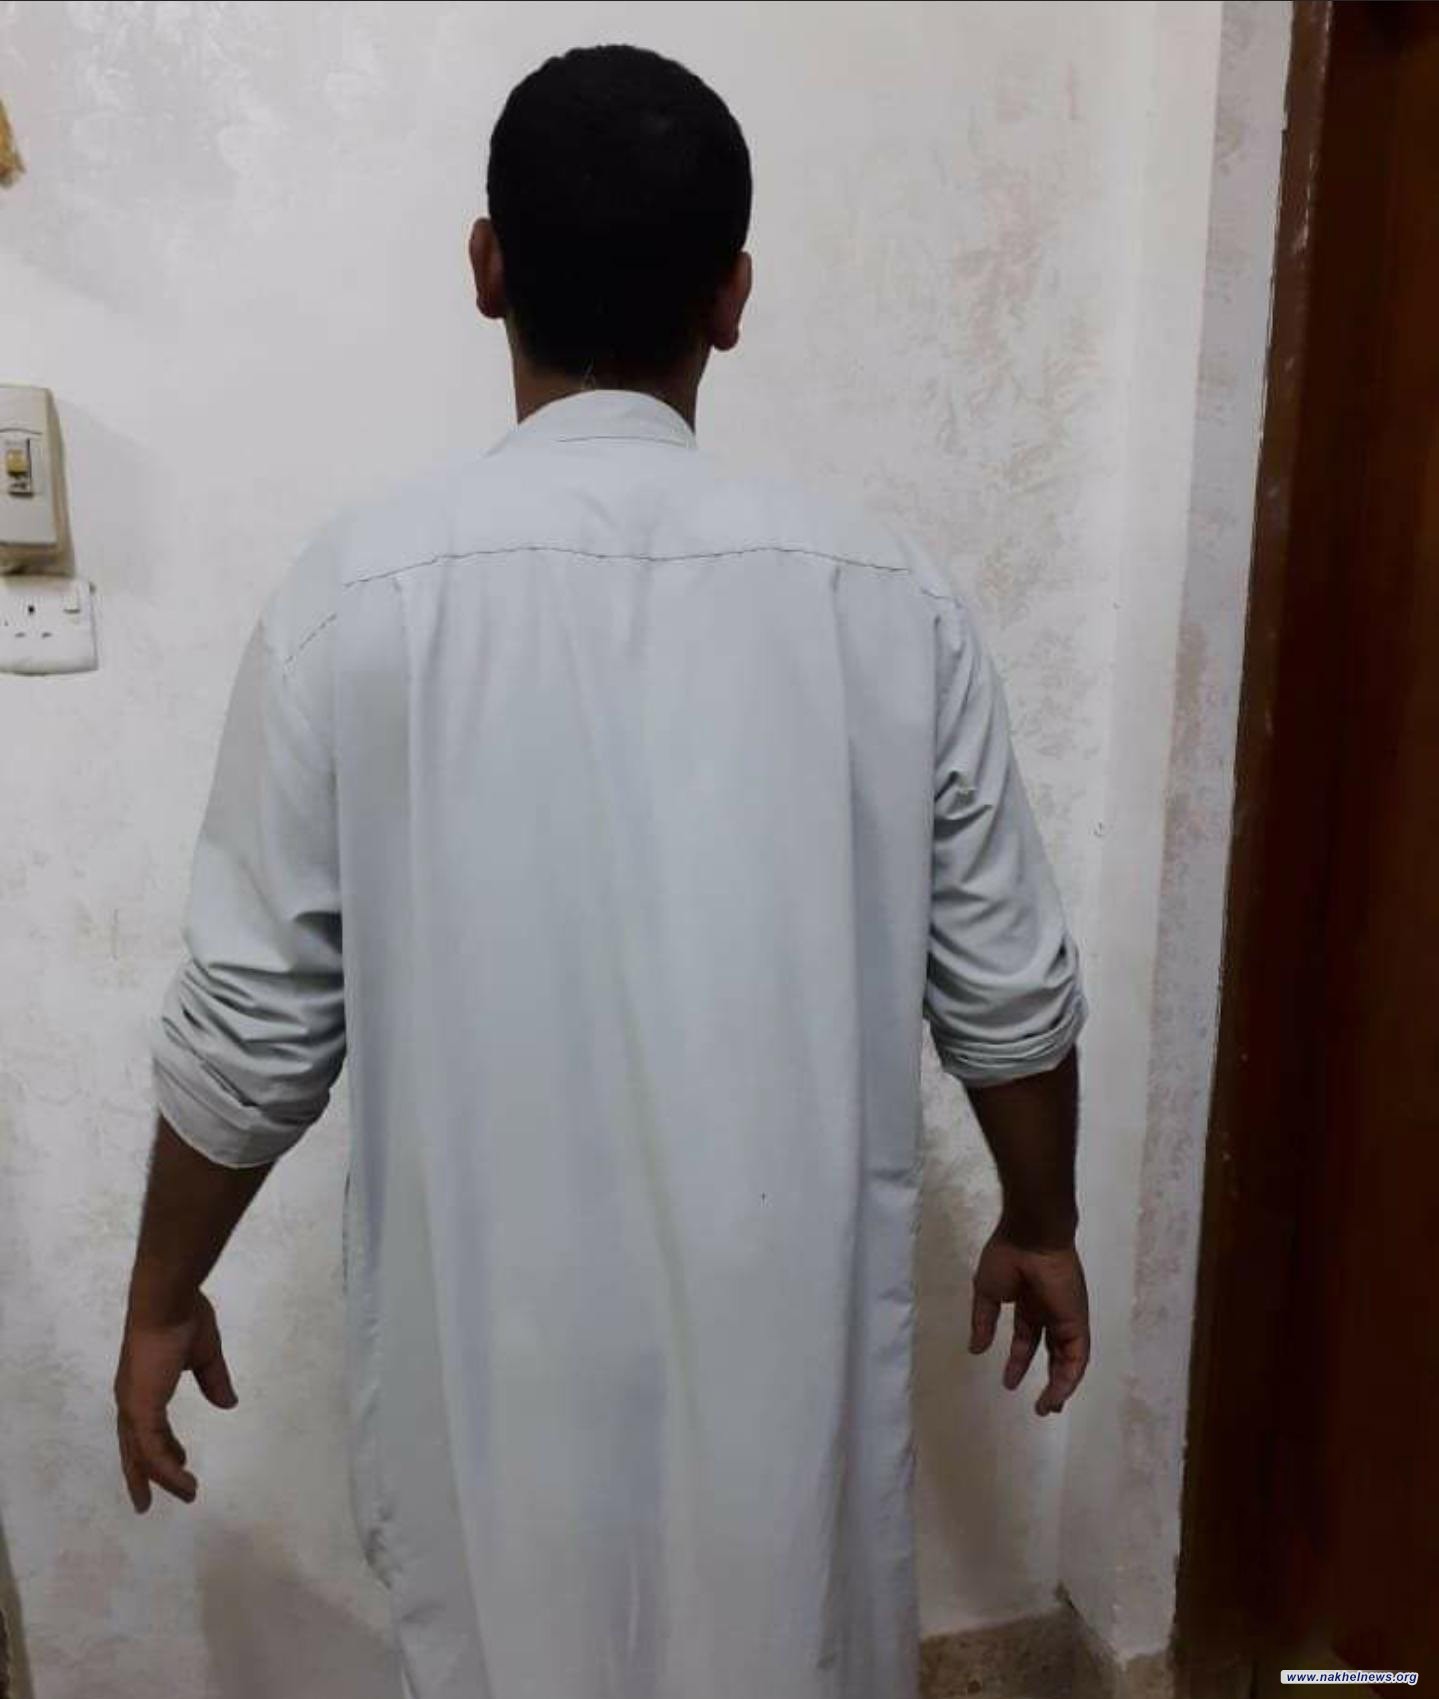 شرطة محافظة الديوانية تلقي القبض على متهم  قام بالاعتداء على شقيقته.